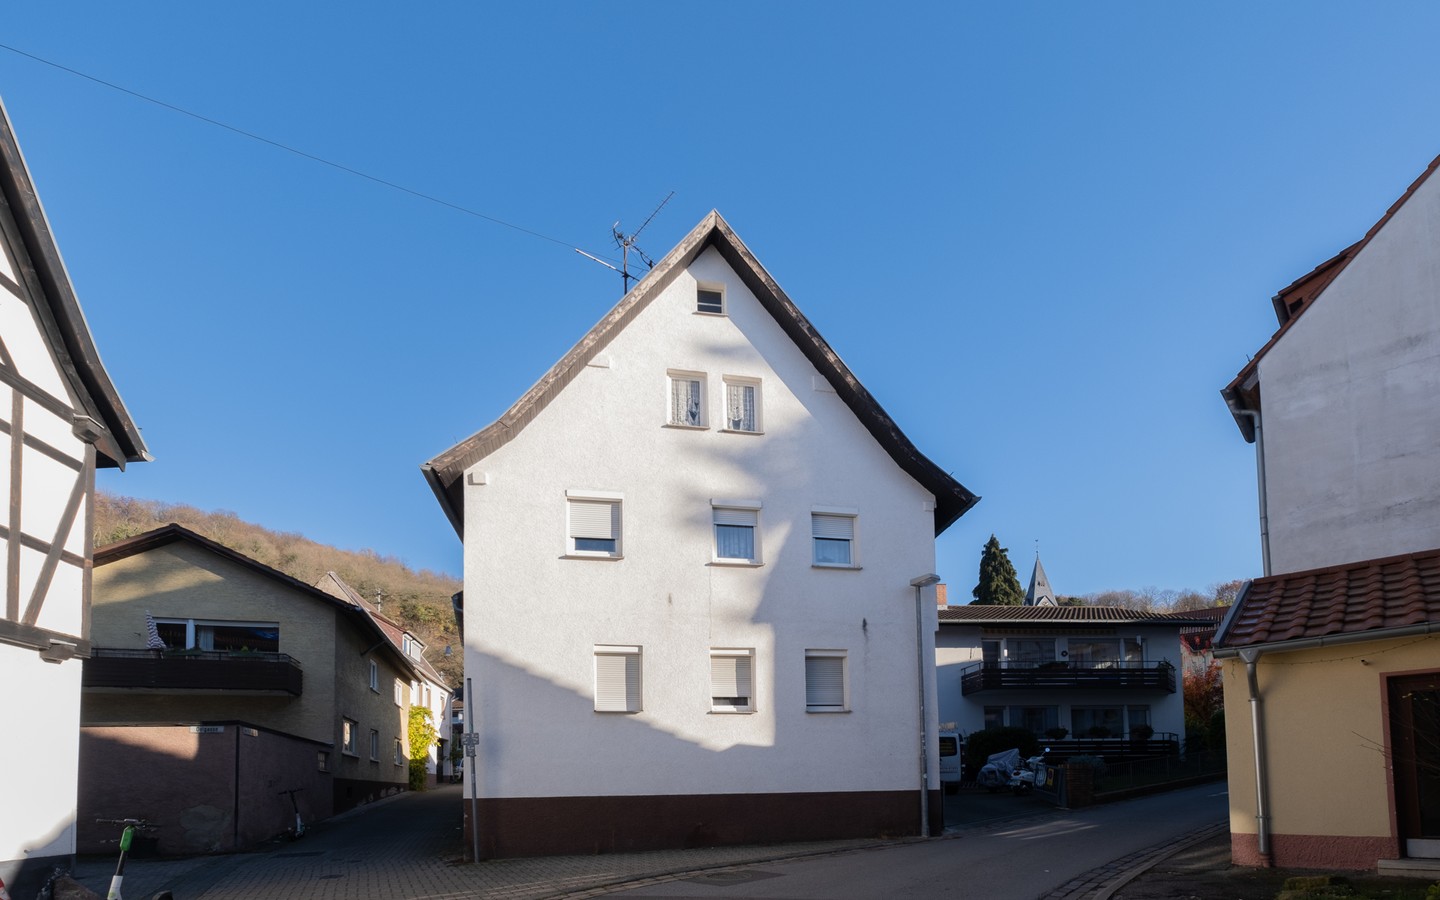 Ansicht Westen - Seltene Gelegenheit mitten in Rohrbach: kernsanierungsbedürftiges Zweifamilienhaus (teilvermietet)